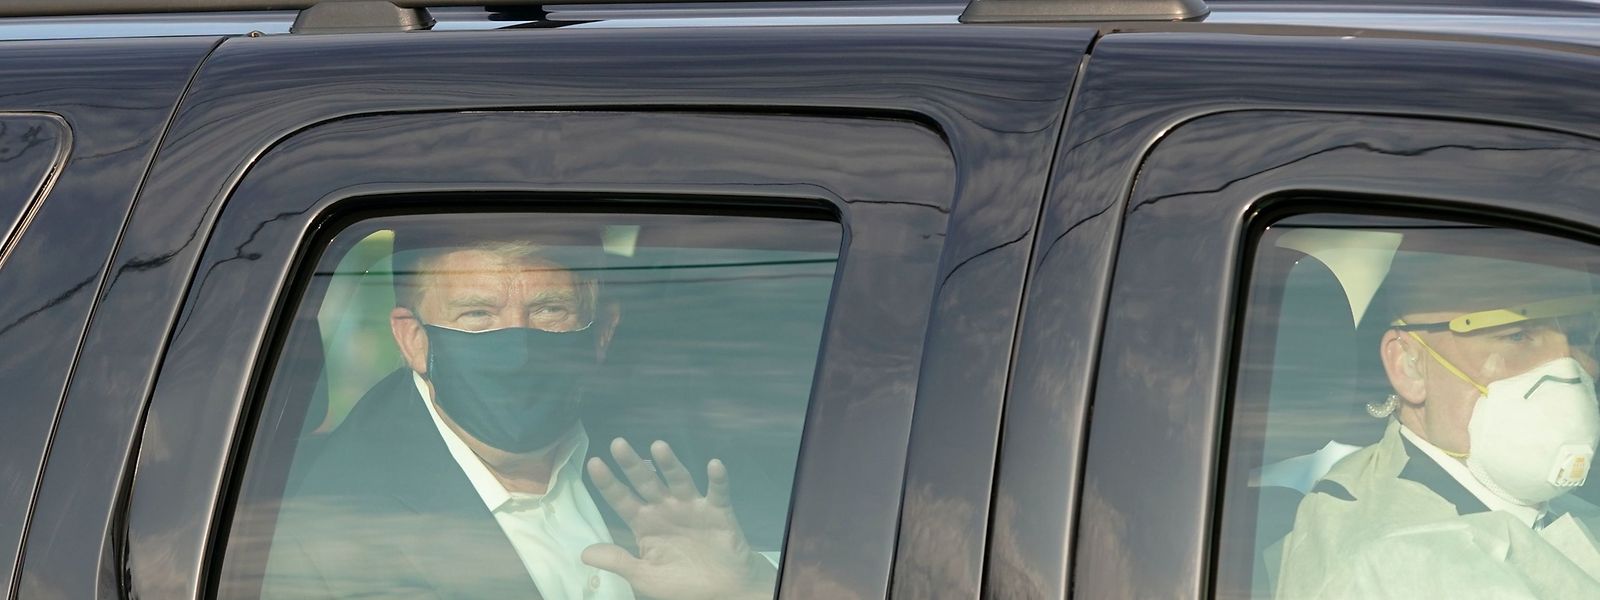 Als der damalige US-Präsident Donald Trump zur Behandlung seiner Covid-Erkrankung in der Klinik war, machte er am 4. Oktober 2020 einen viel kritisierten Ausflug auf dem Rücksitz eines Autos.